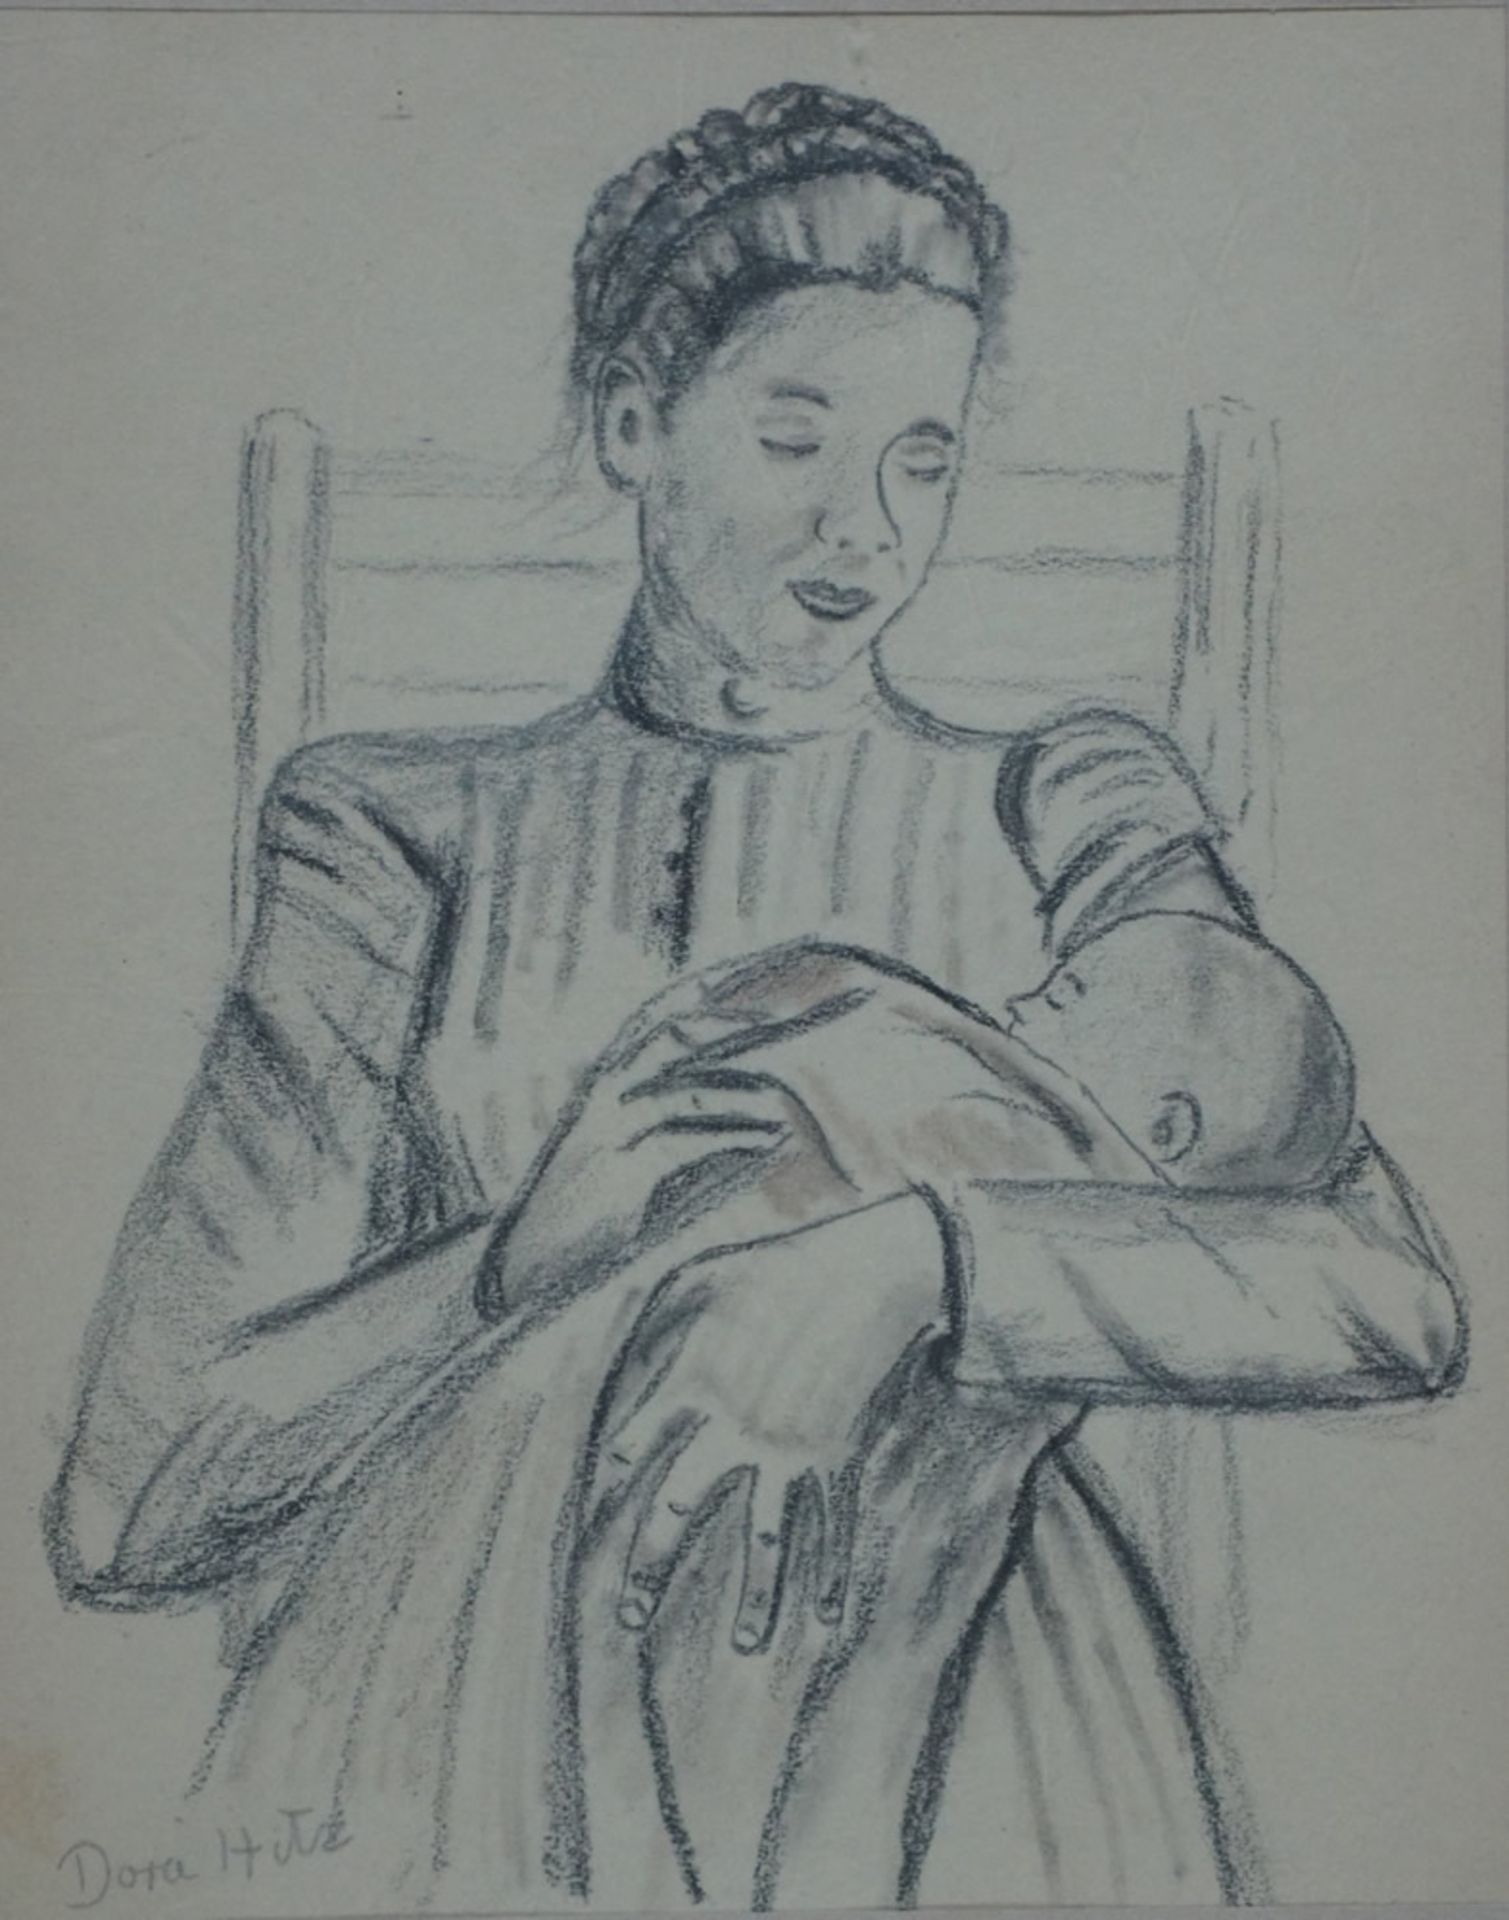 Hitz, Dora, Mutter mit Kind, Blei, 20 x 16 cm, sign.